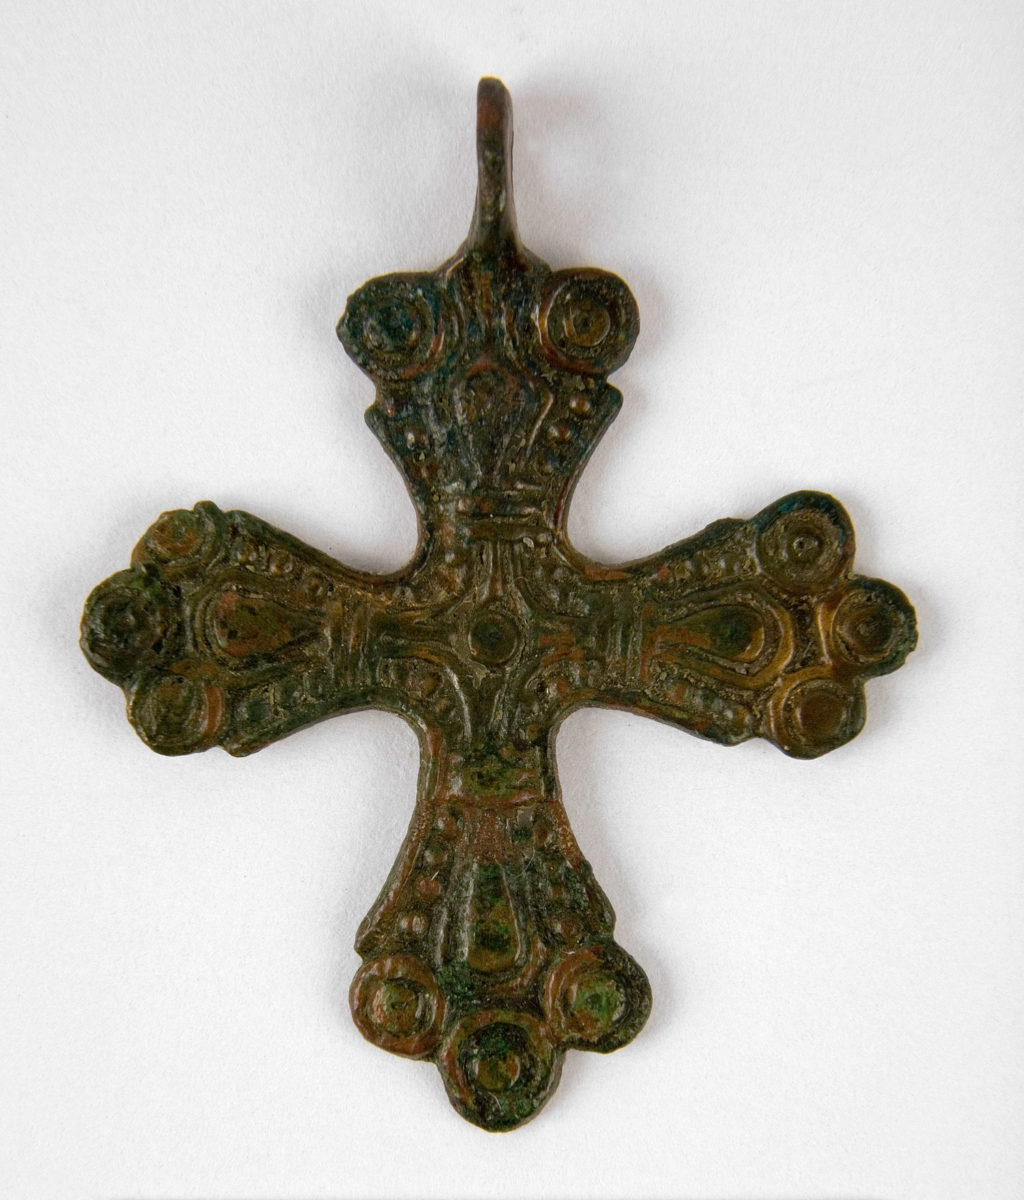 Σταυρός «Σκανδιναβικού» τύπου, μπρούντζινος. Άγνωστης προέλευσης, Λευκορωσία. 11ος-12ος αι. (© Κρατικό Αρχαιολογικό Μουσείο Βαρσοβίας).